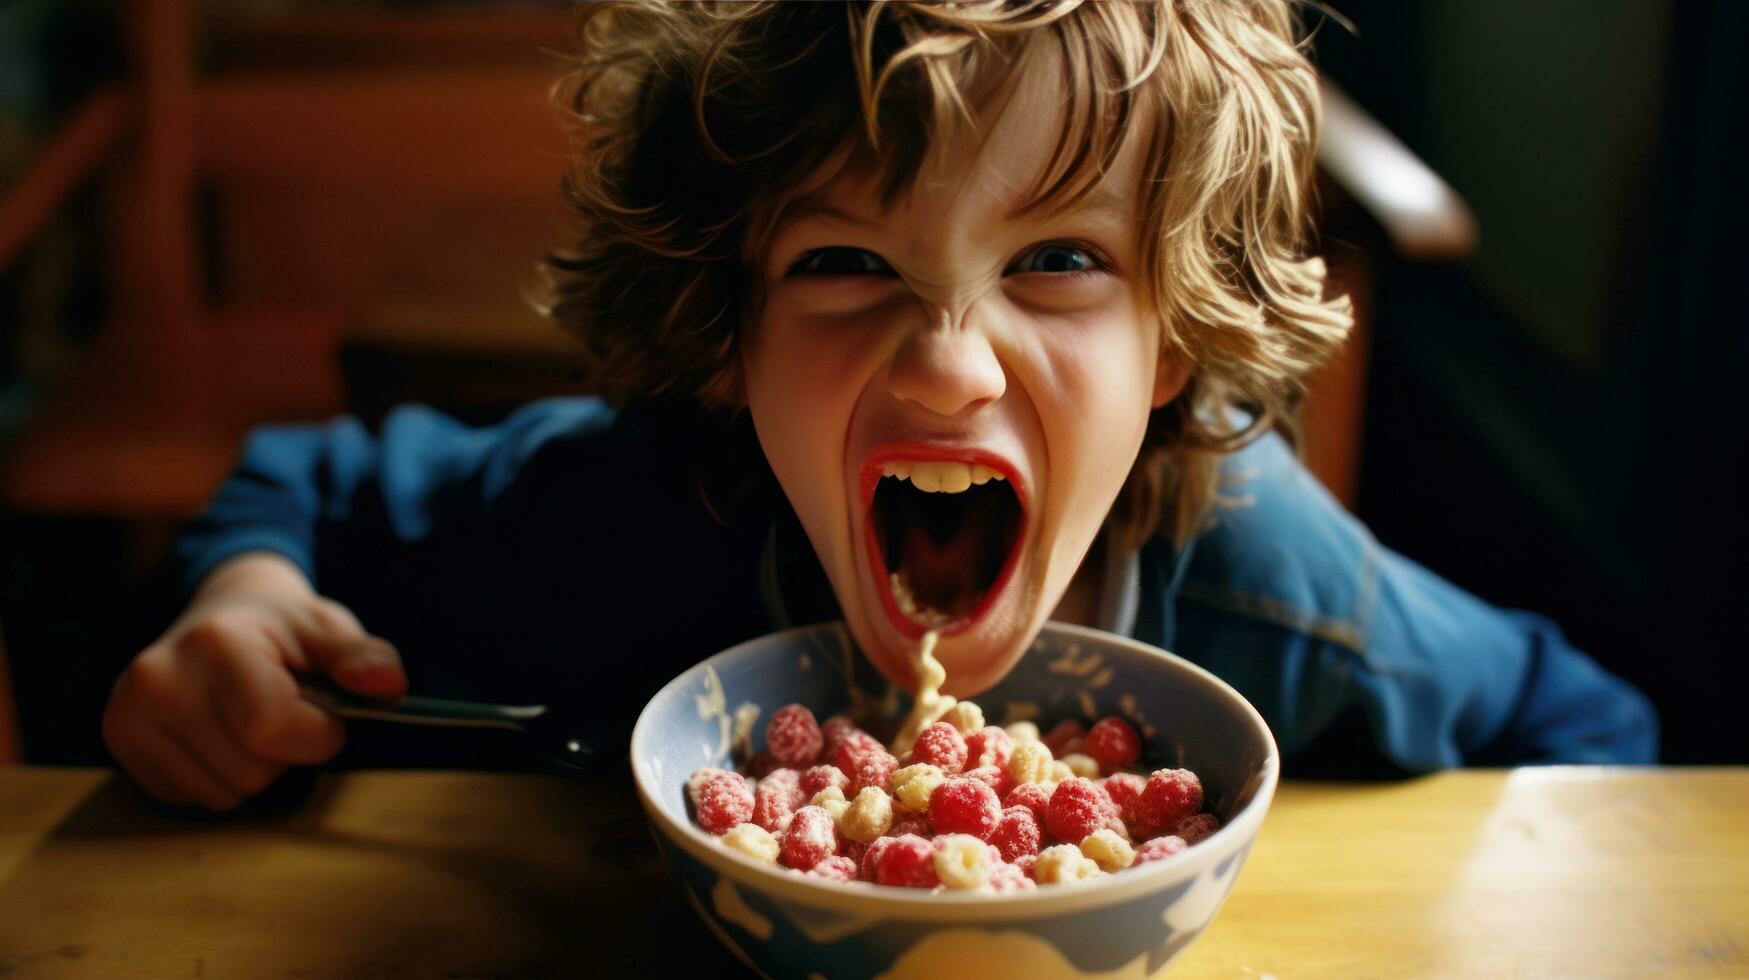 un niño riendo junto a un cuenco de cereal foto